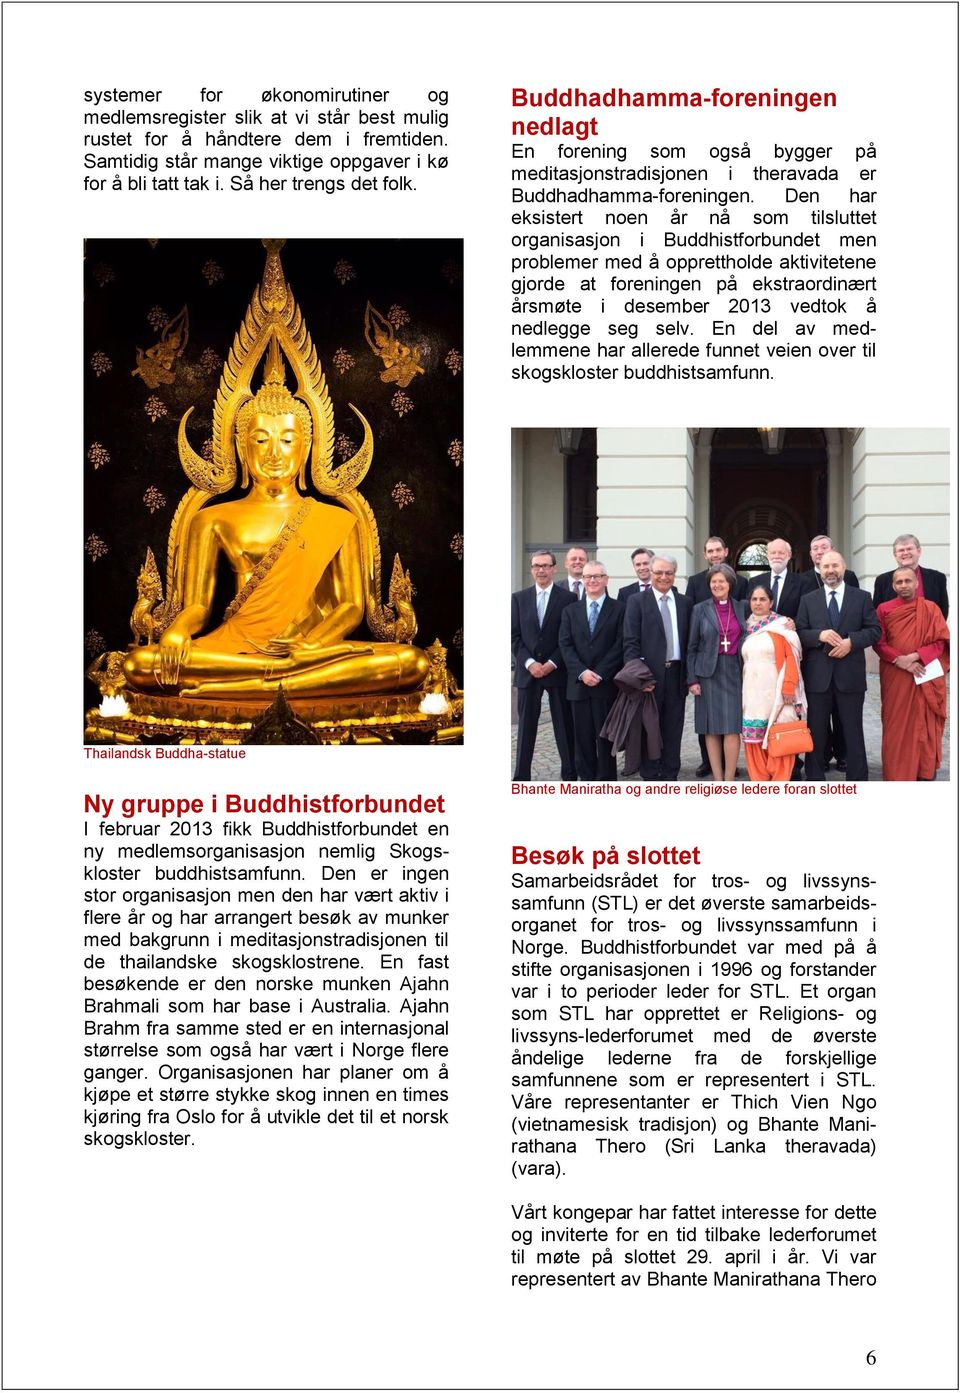 Den har eksistert noen år nå som tilsluttet organisasjon i Buddhistforbundet men problemer med å opprettholde aktivitetene gjorde at foreningen på ekstraordinært årsmøte i desember 2013 vedtok å